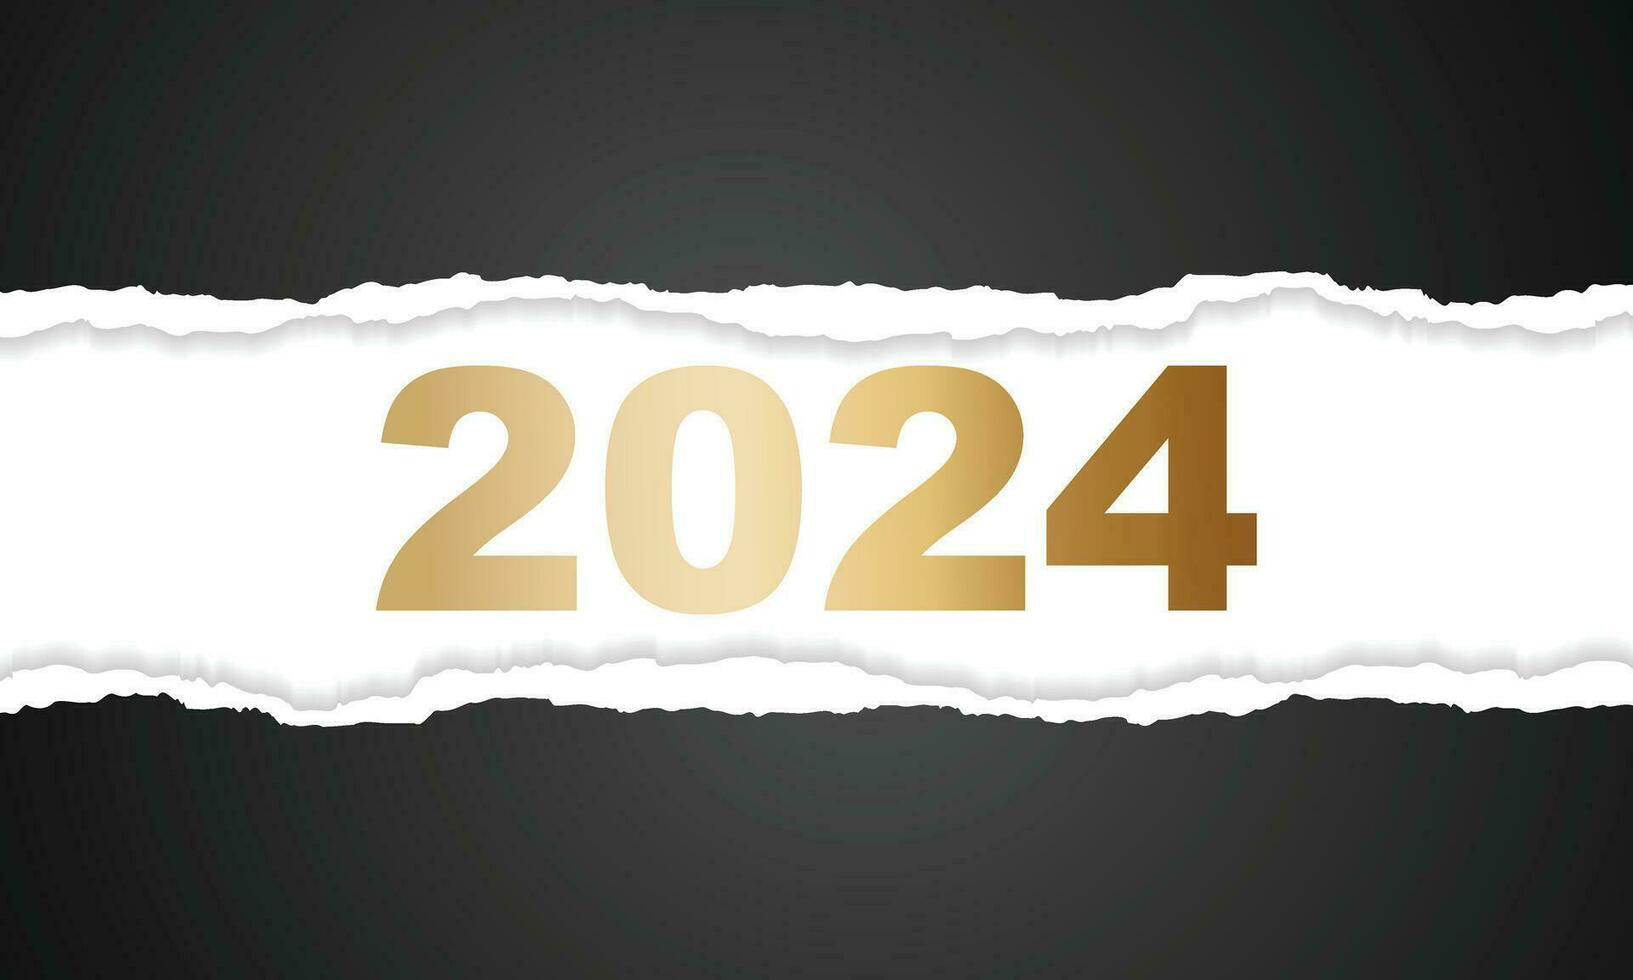 2024 contento nuovo anno sfondo design. saluto carta, striscione, manifesto. vettore illustrazione.